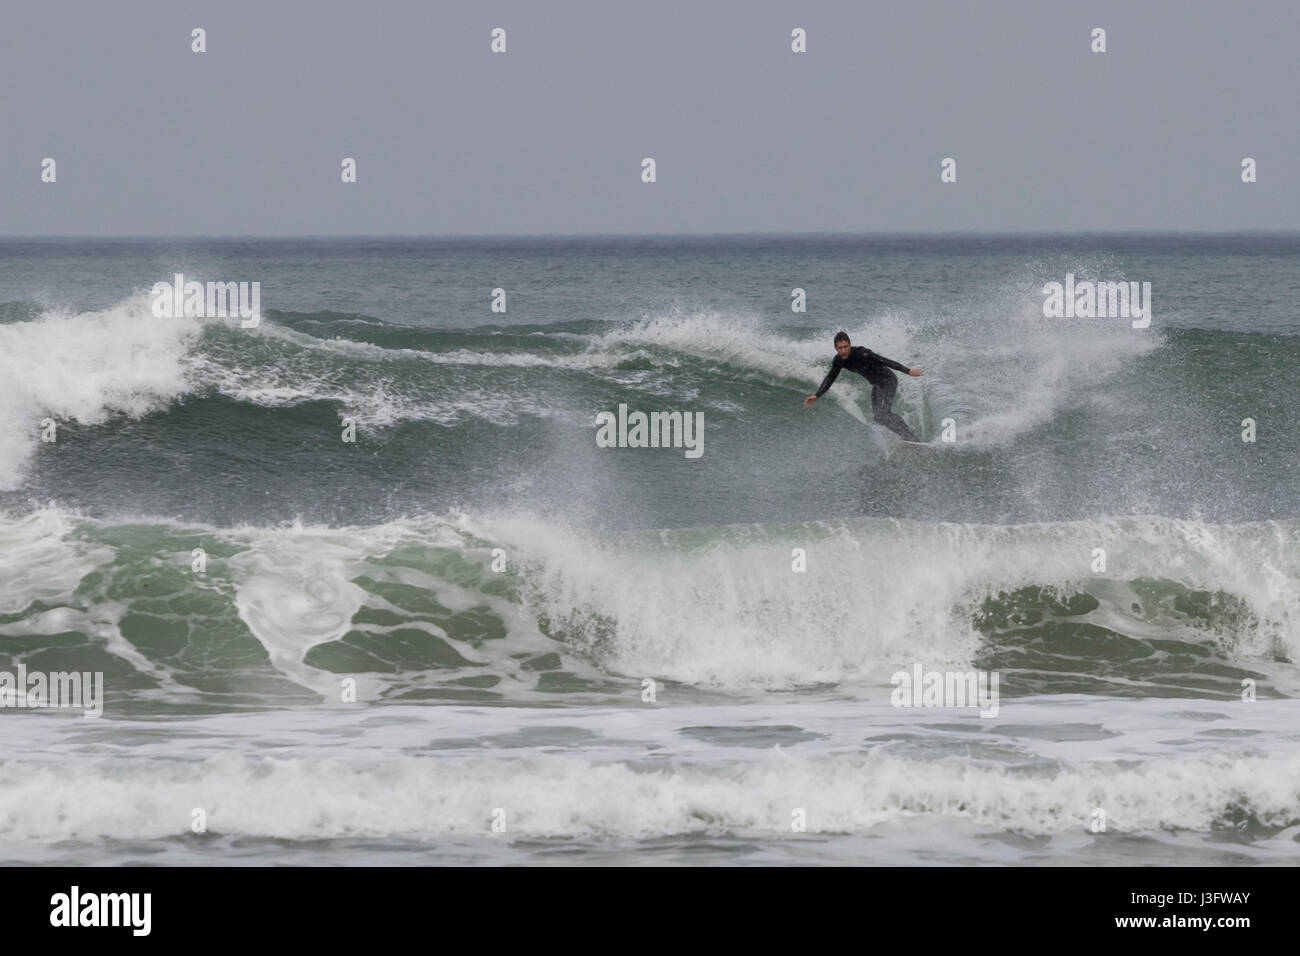 Capture de surfer les vagues sauvages dans la plage de Zurriola à San Sebastian (Guipuzcoa, Espagne) 2017. Banque D'Images